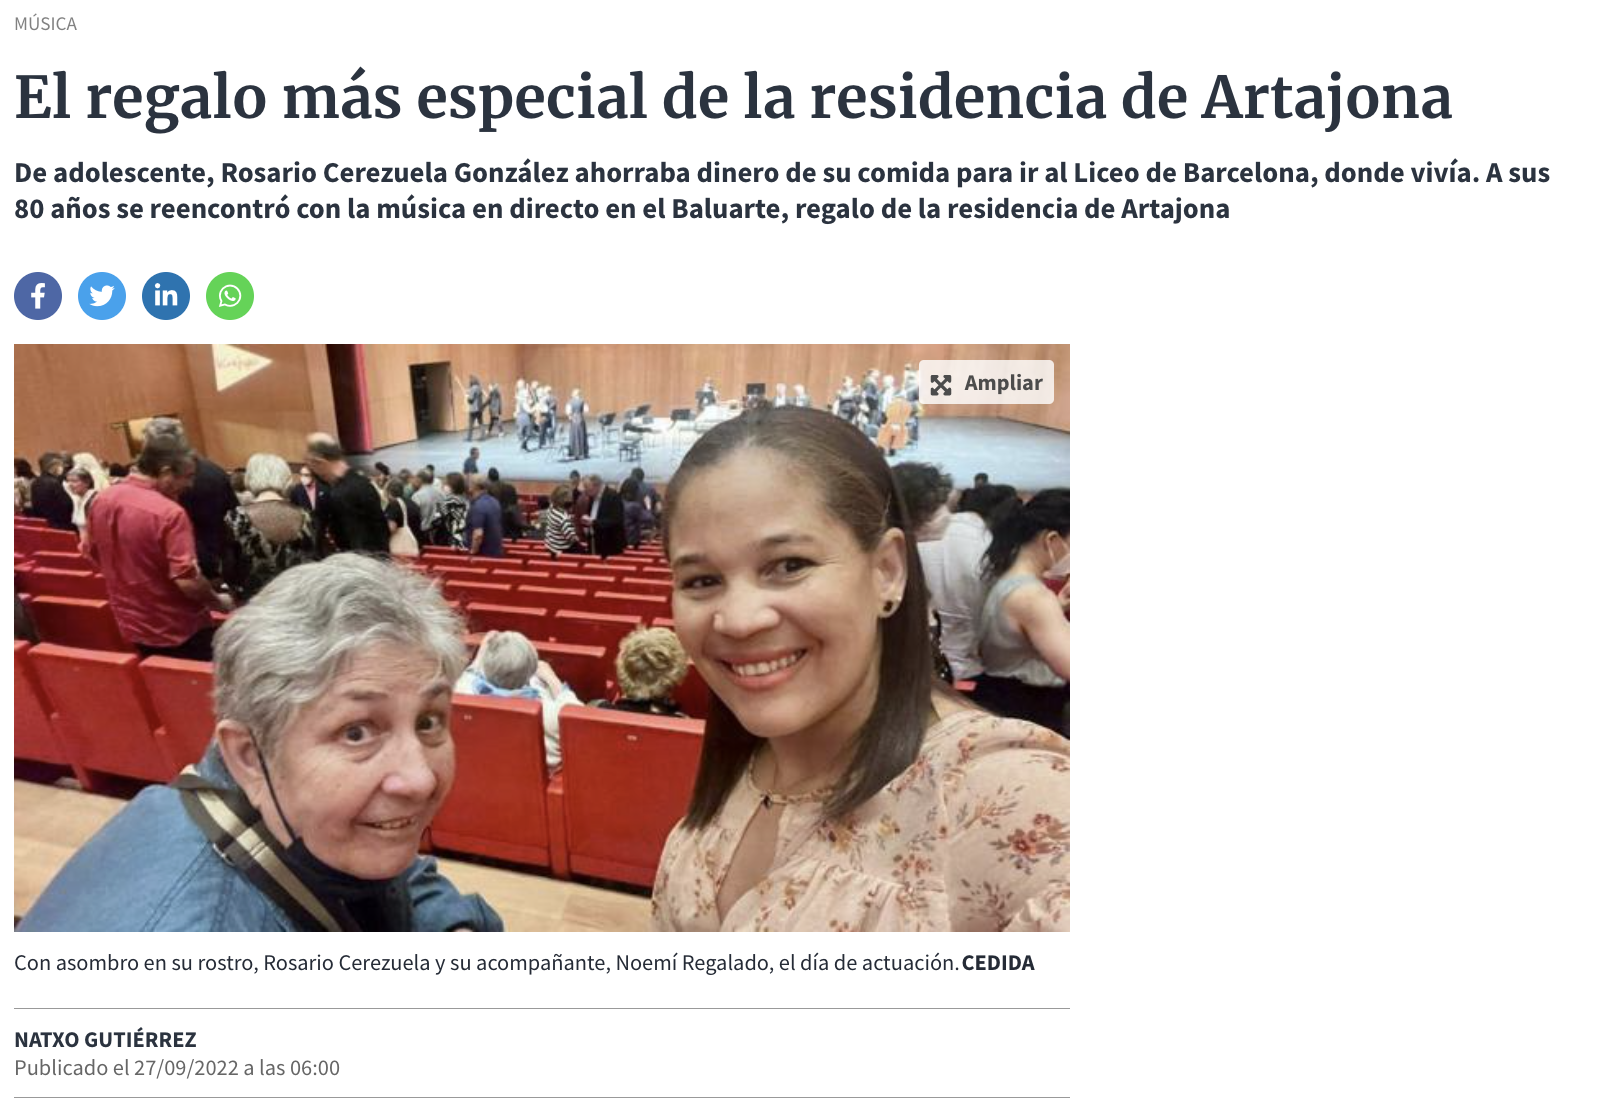 Inicio de la noticia en Diario de Navarra: El regalo más especial de la residencia de Artajona